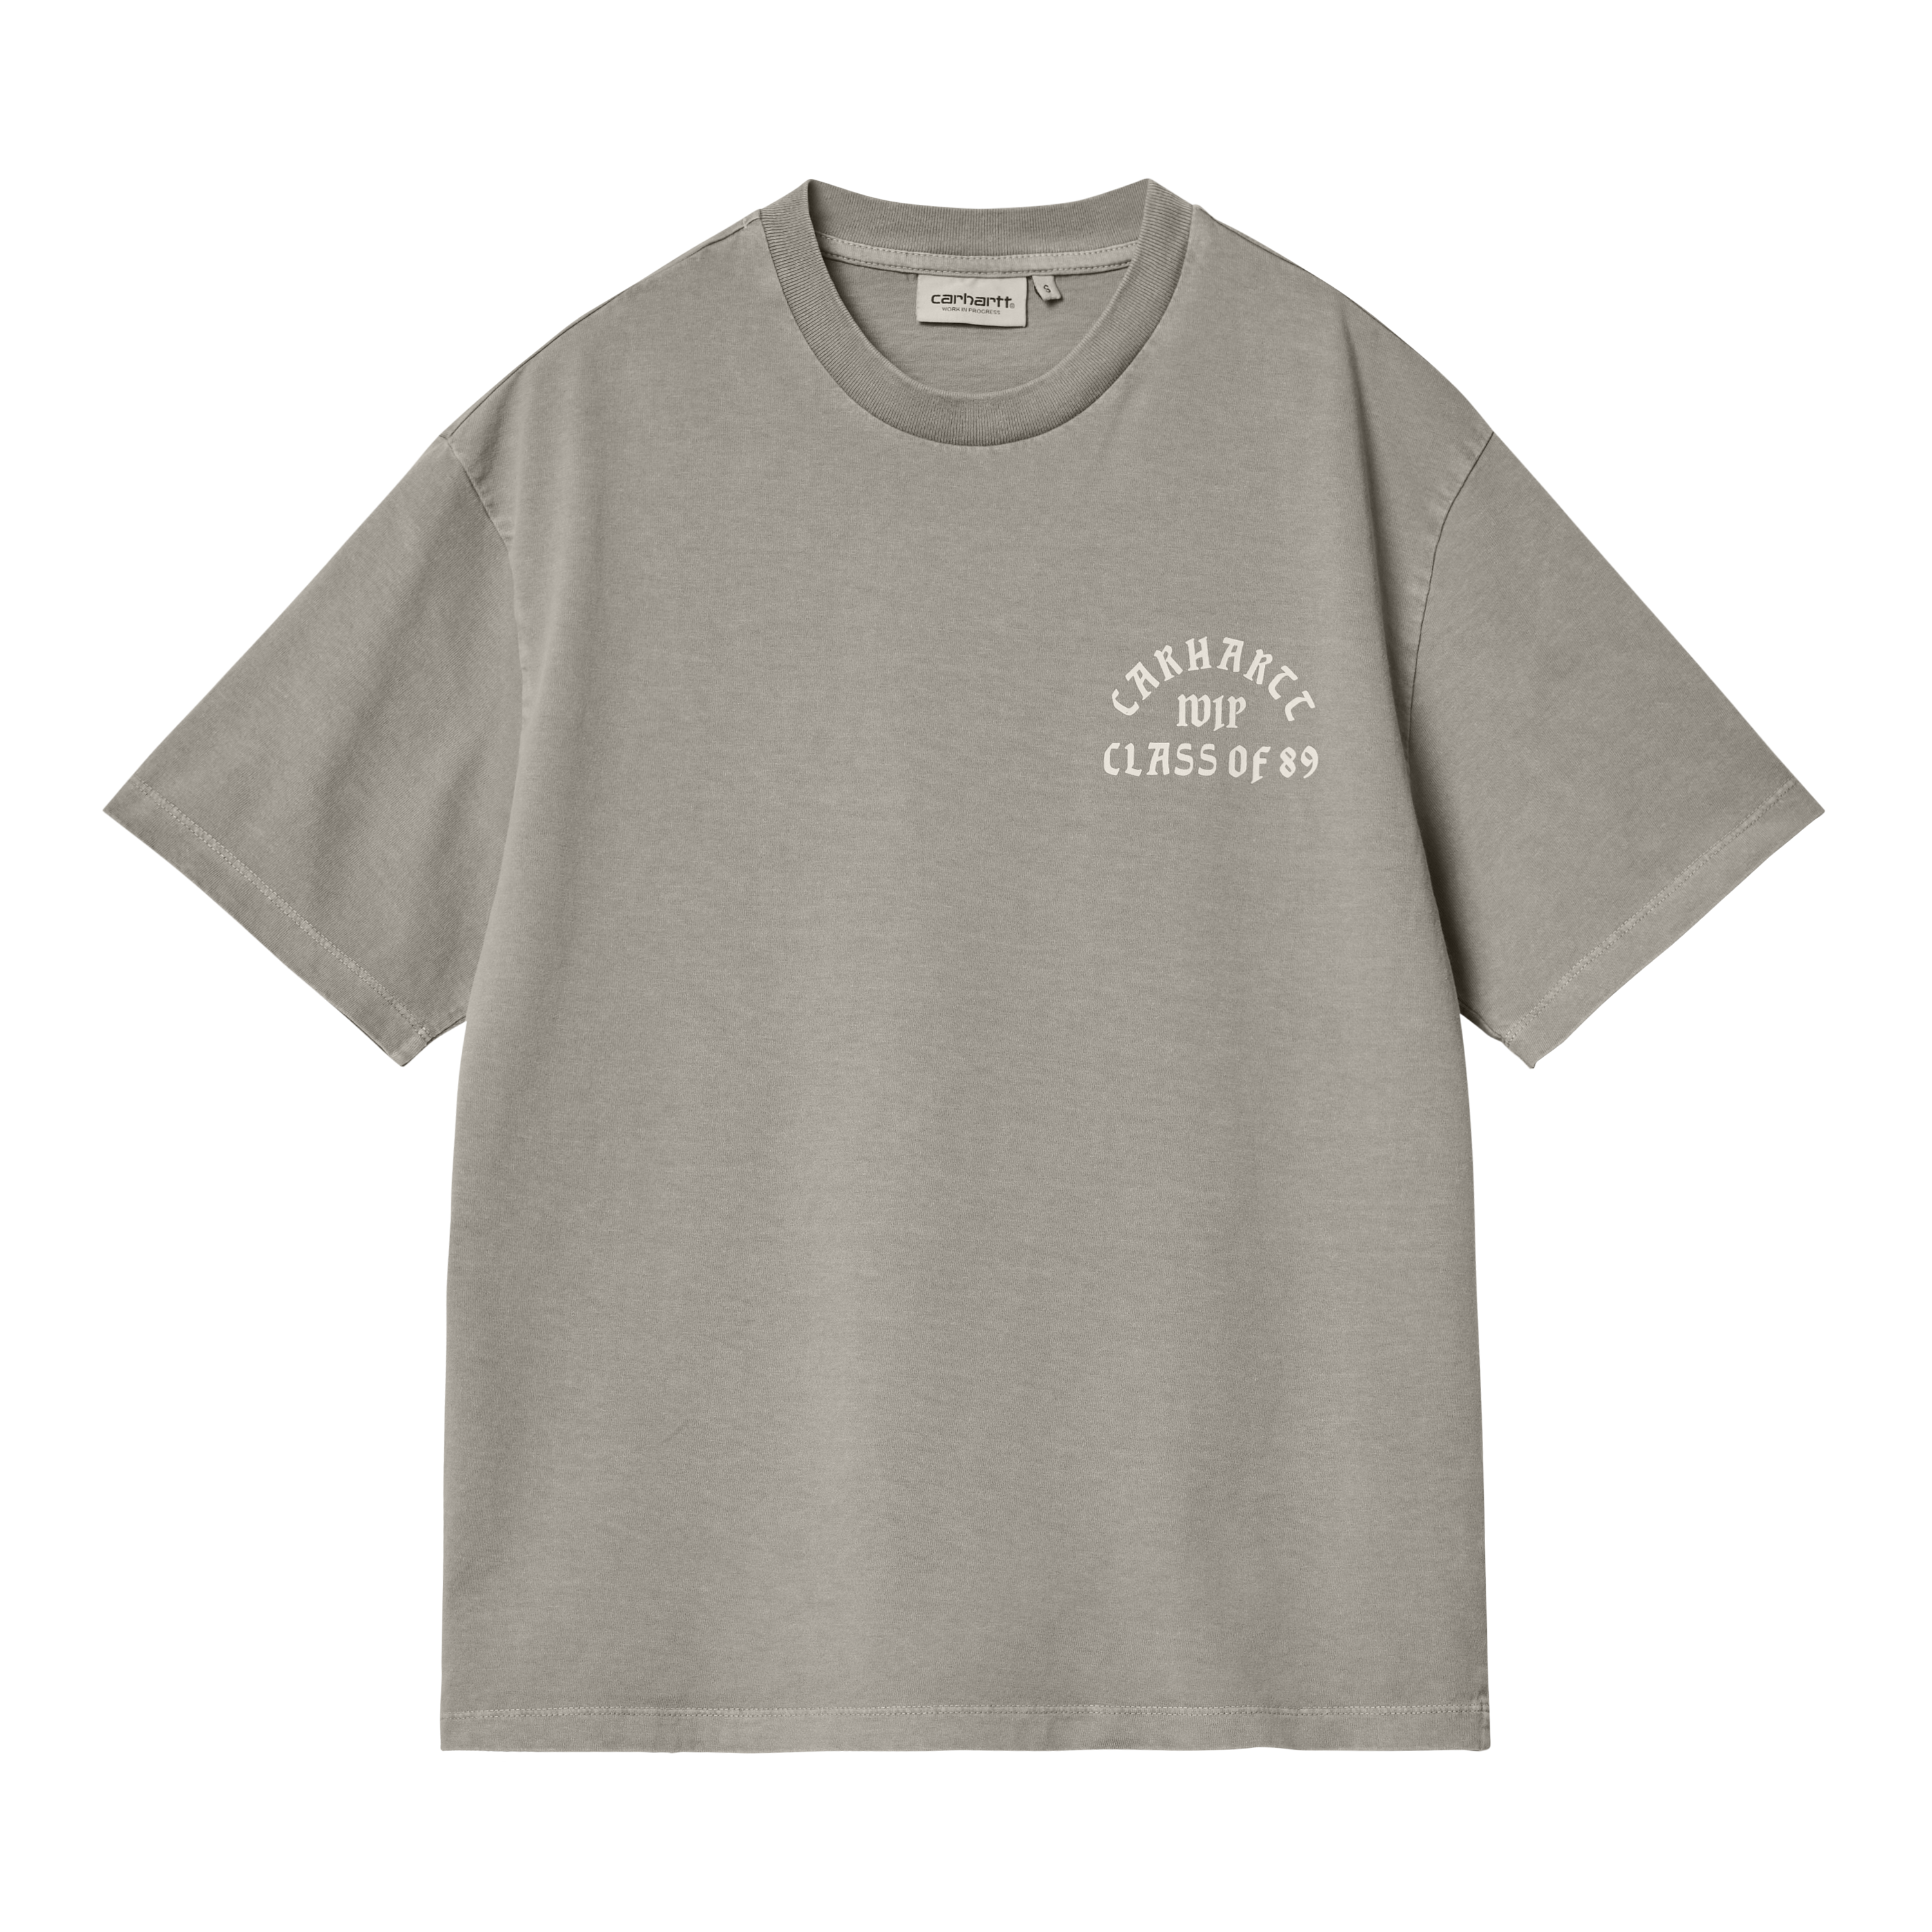 Carhartt WIP Women’s Short Sleeve Class of 89 T-Shirt en Gris